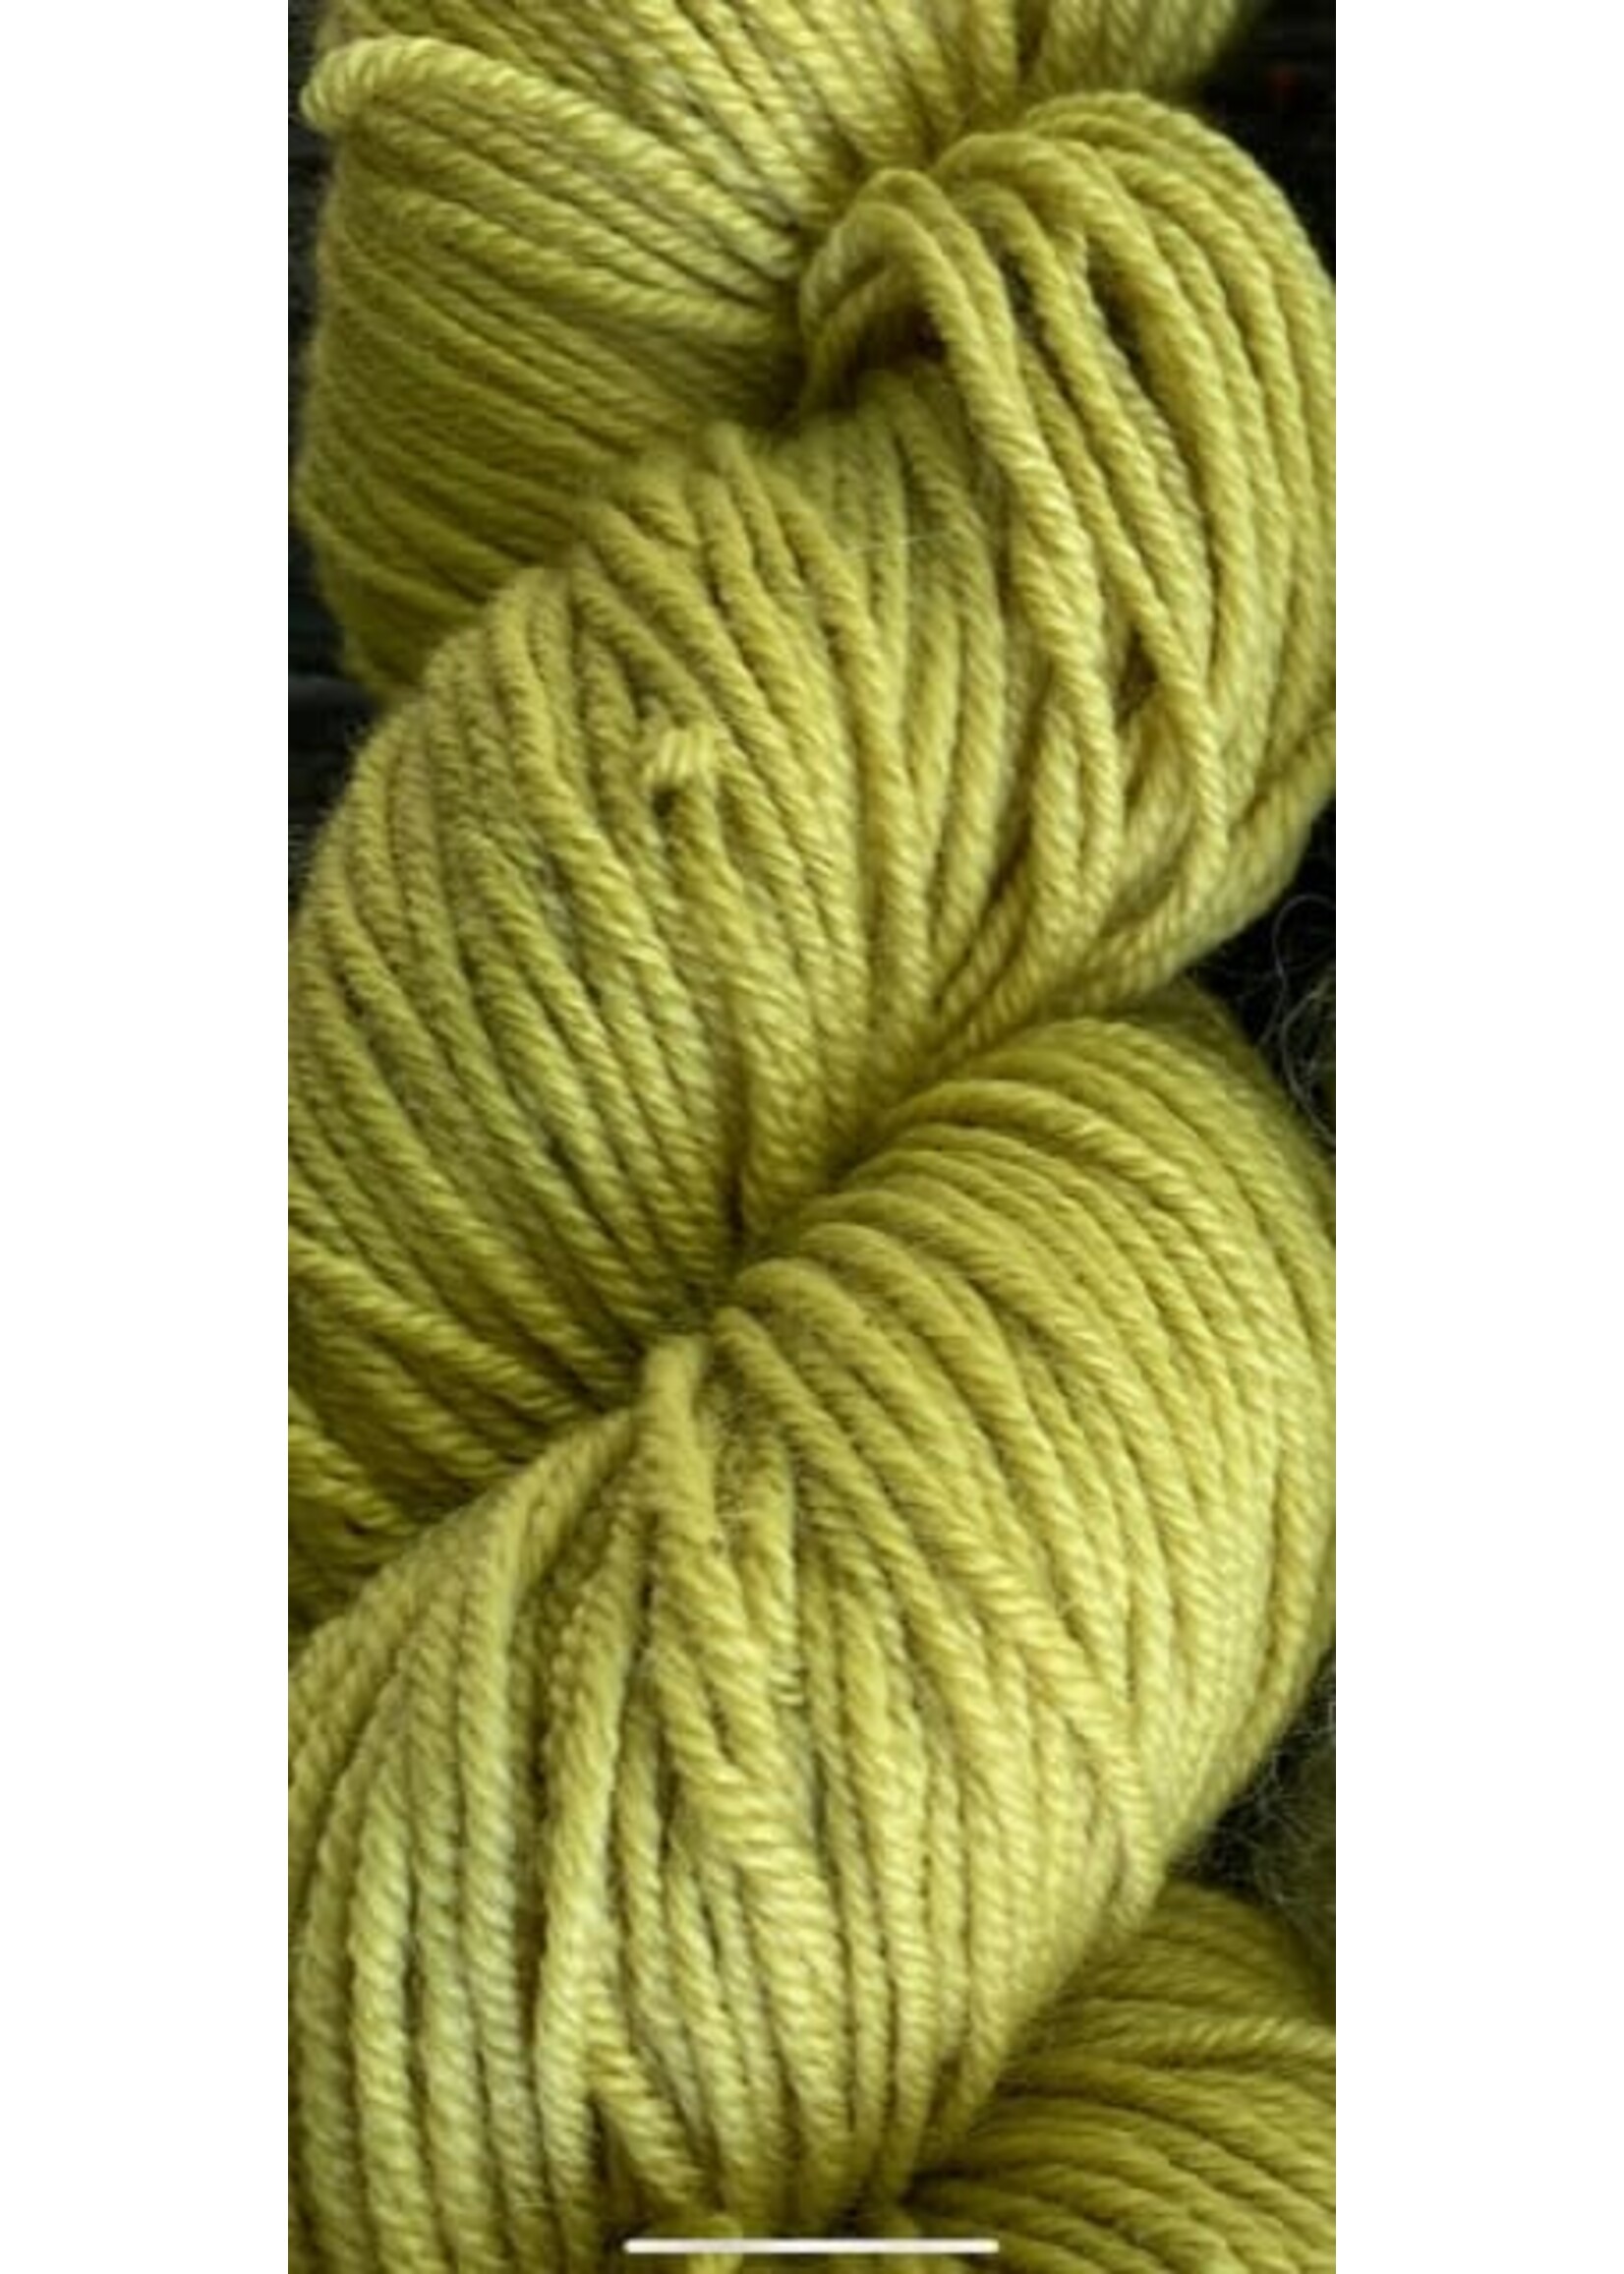 Schaefjeswol Merino DK kleur: Bloeinde Netels geelgroen 100 gr - 250 m